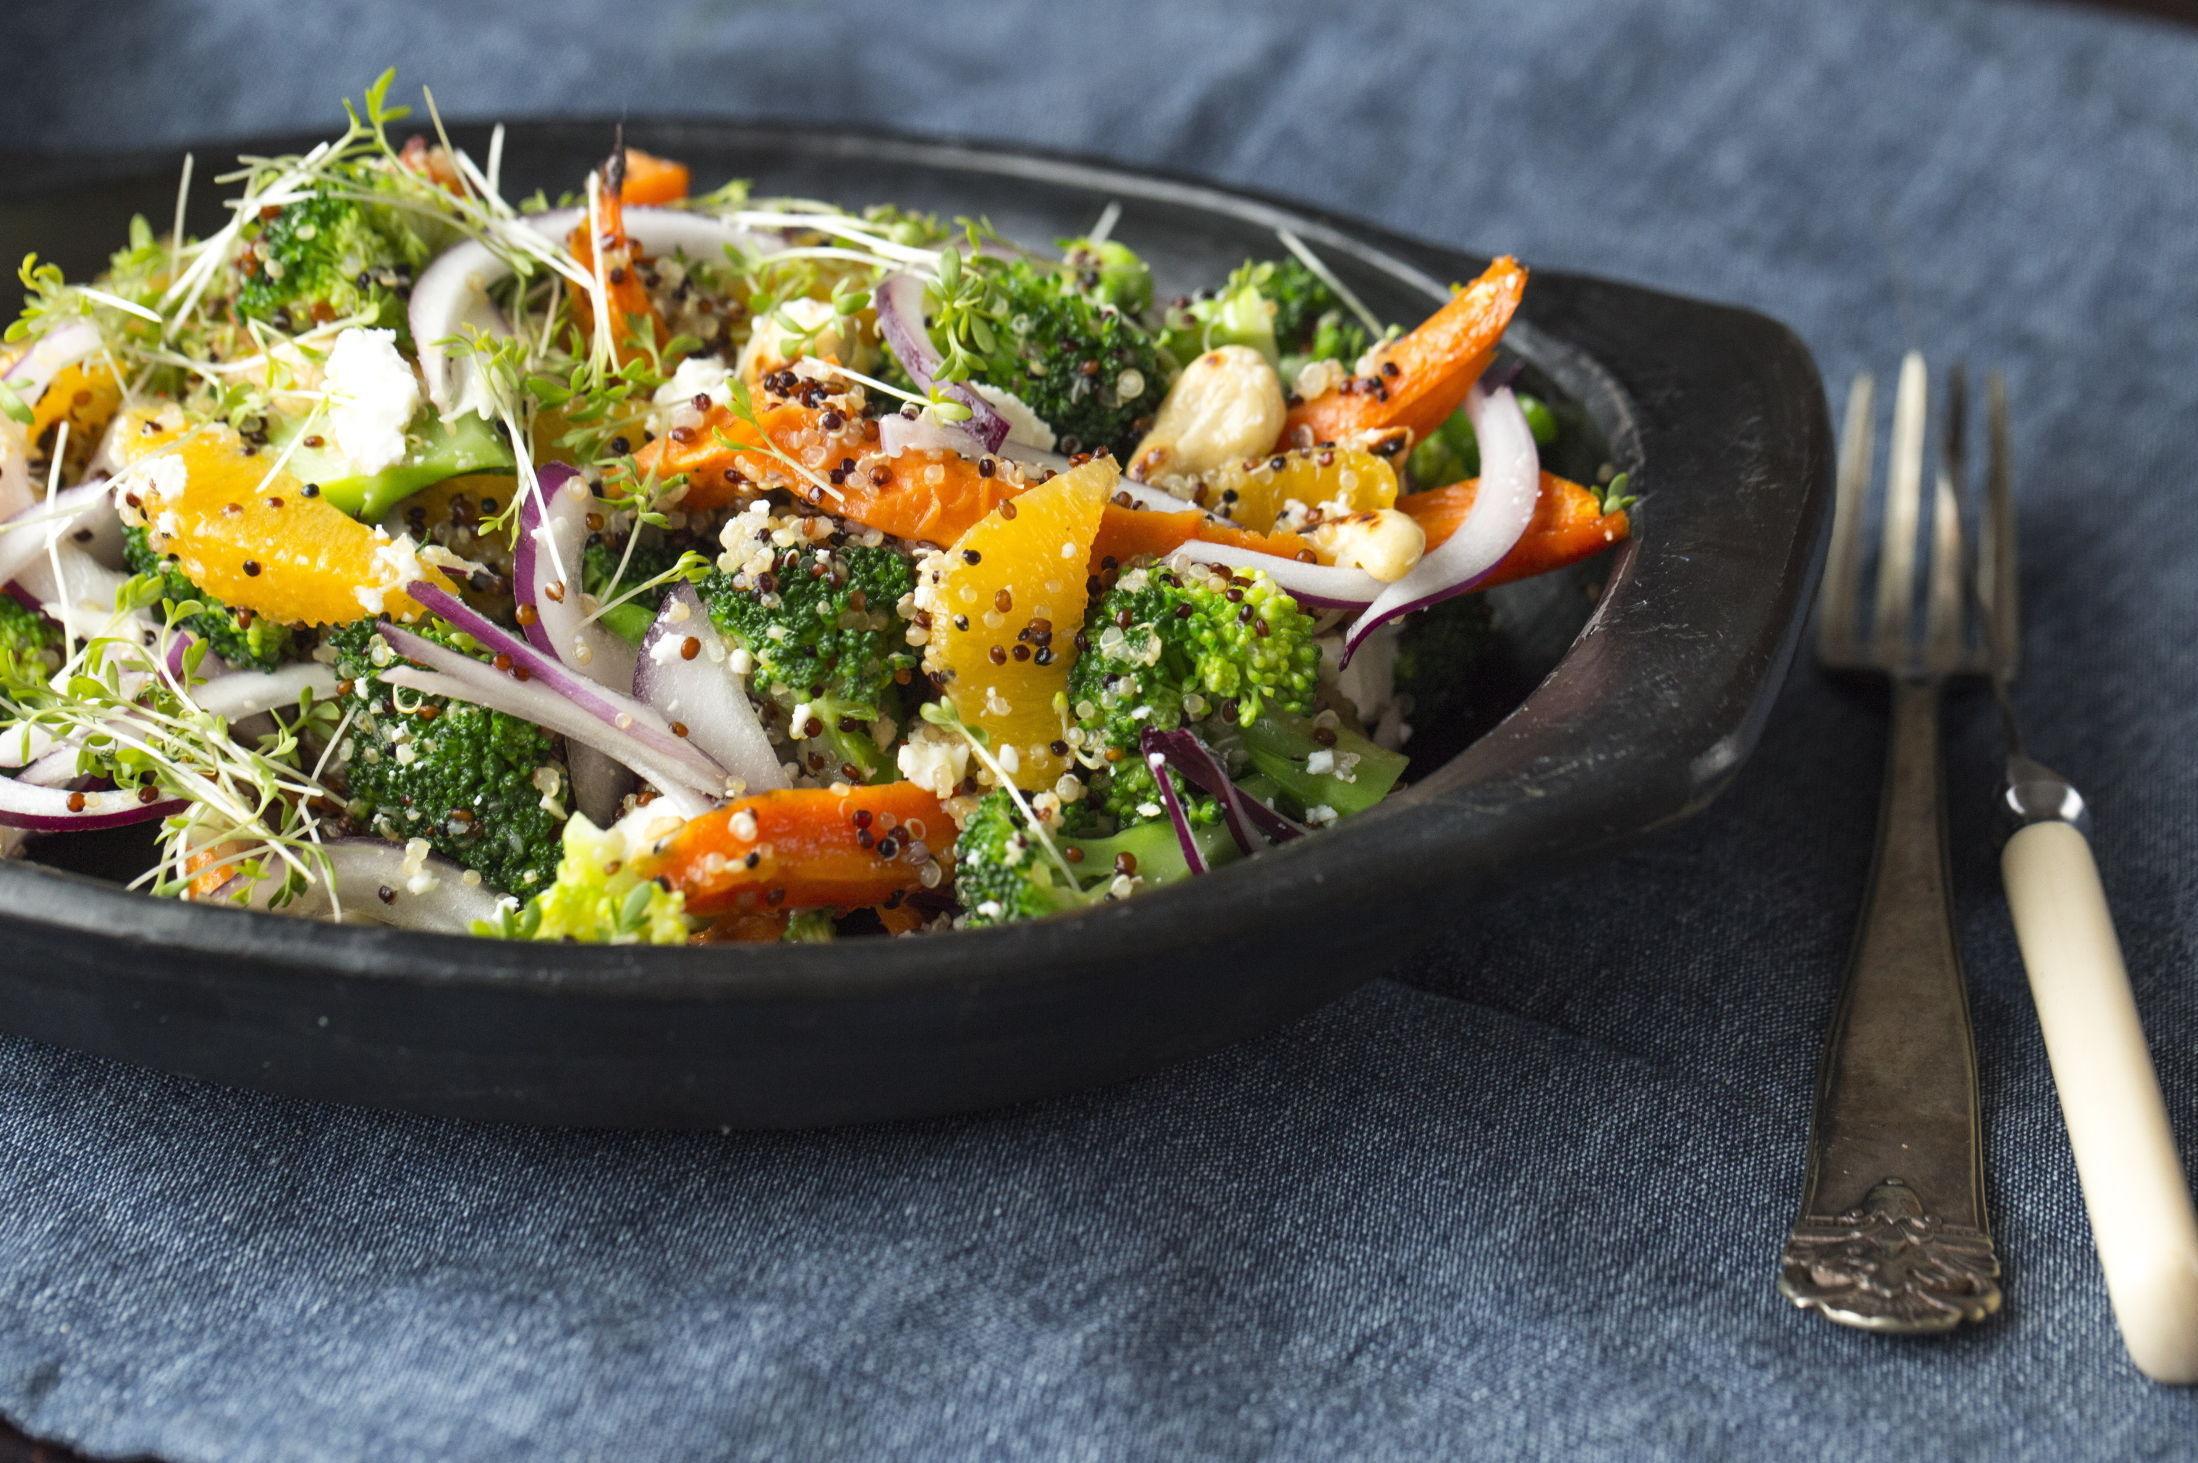 FEM OM DAGEN: Mettende salat trenger ikke å være kjedelig når den er fylt med gode grønnsaker. Oppskriften finner du her. Foto: Sara Johannessen / VG